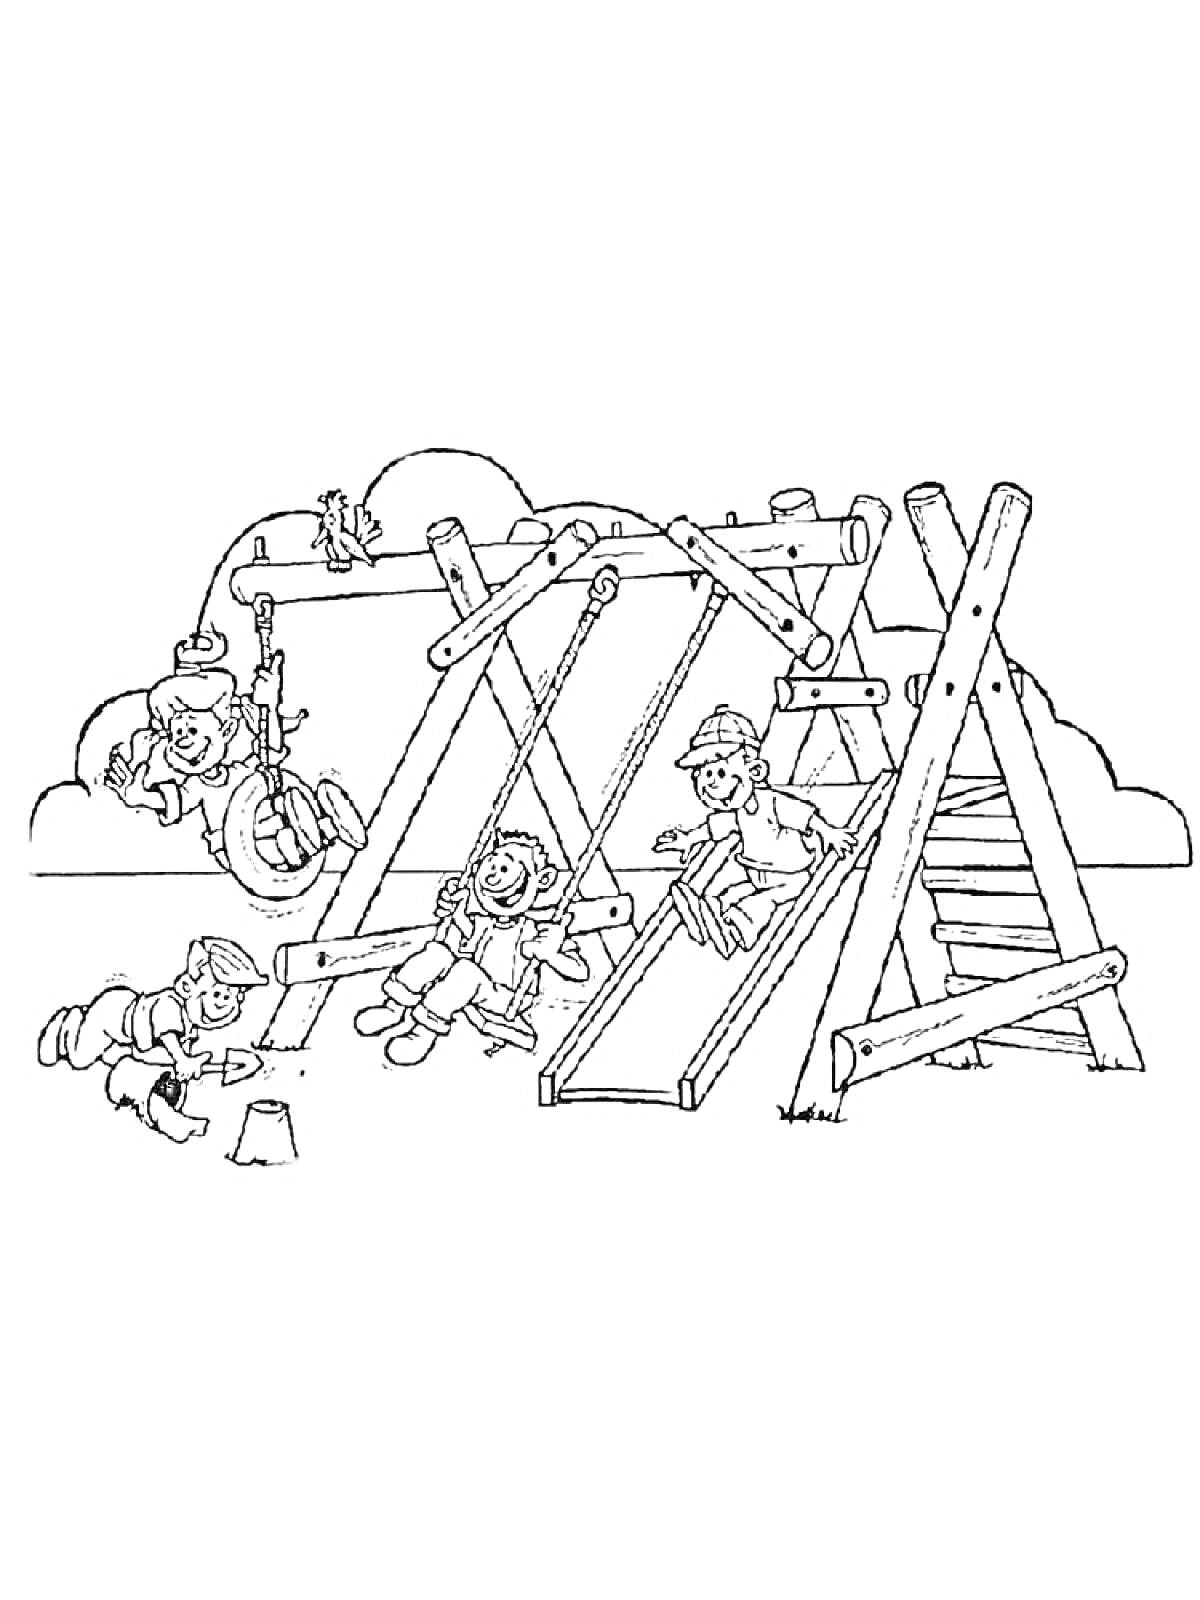 Раскраска Дети на детской площадке с качелями, канатной лестницей и тайровыми качелями